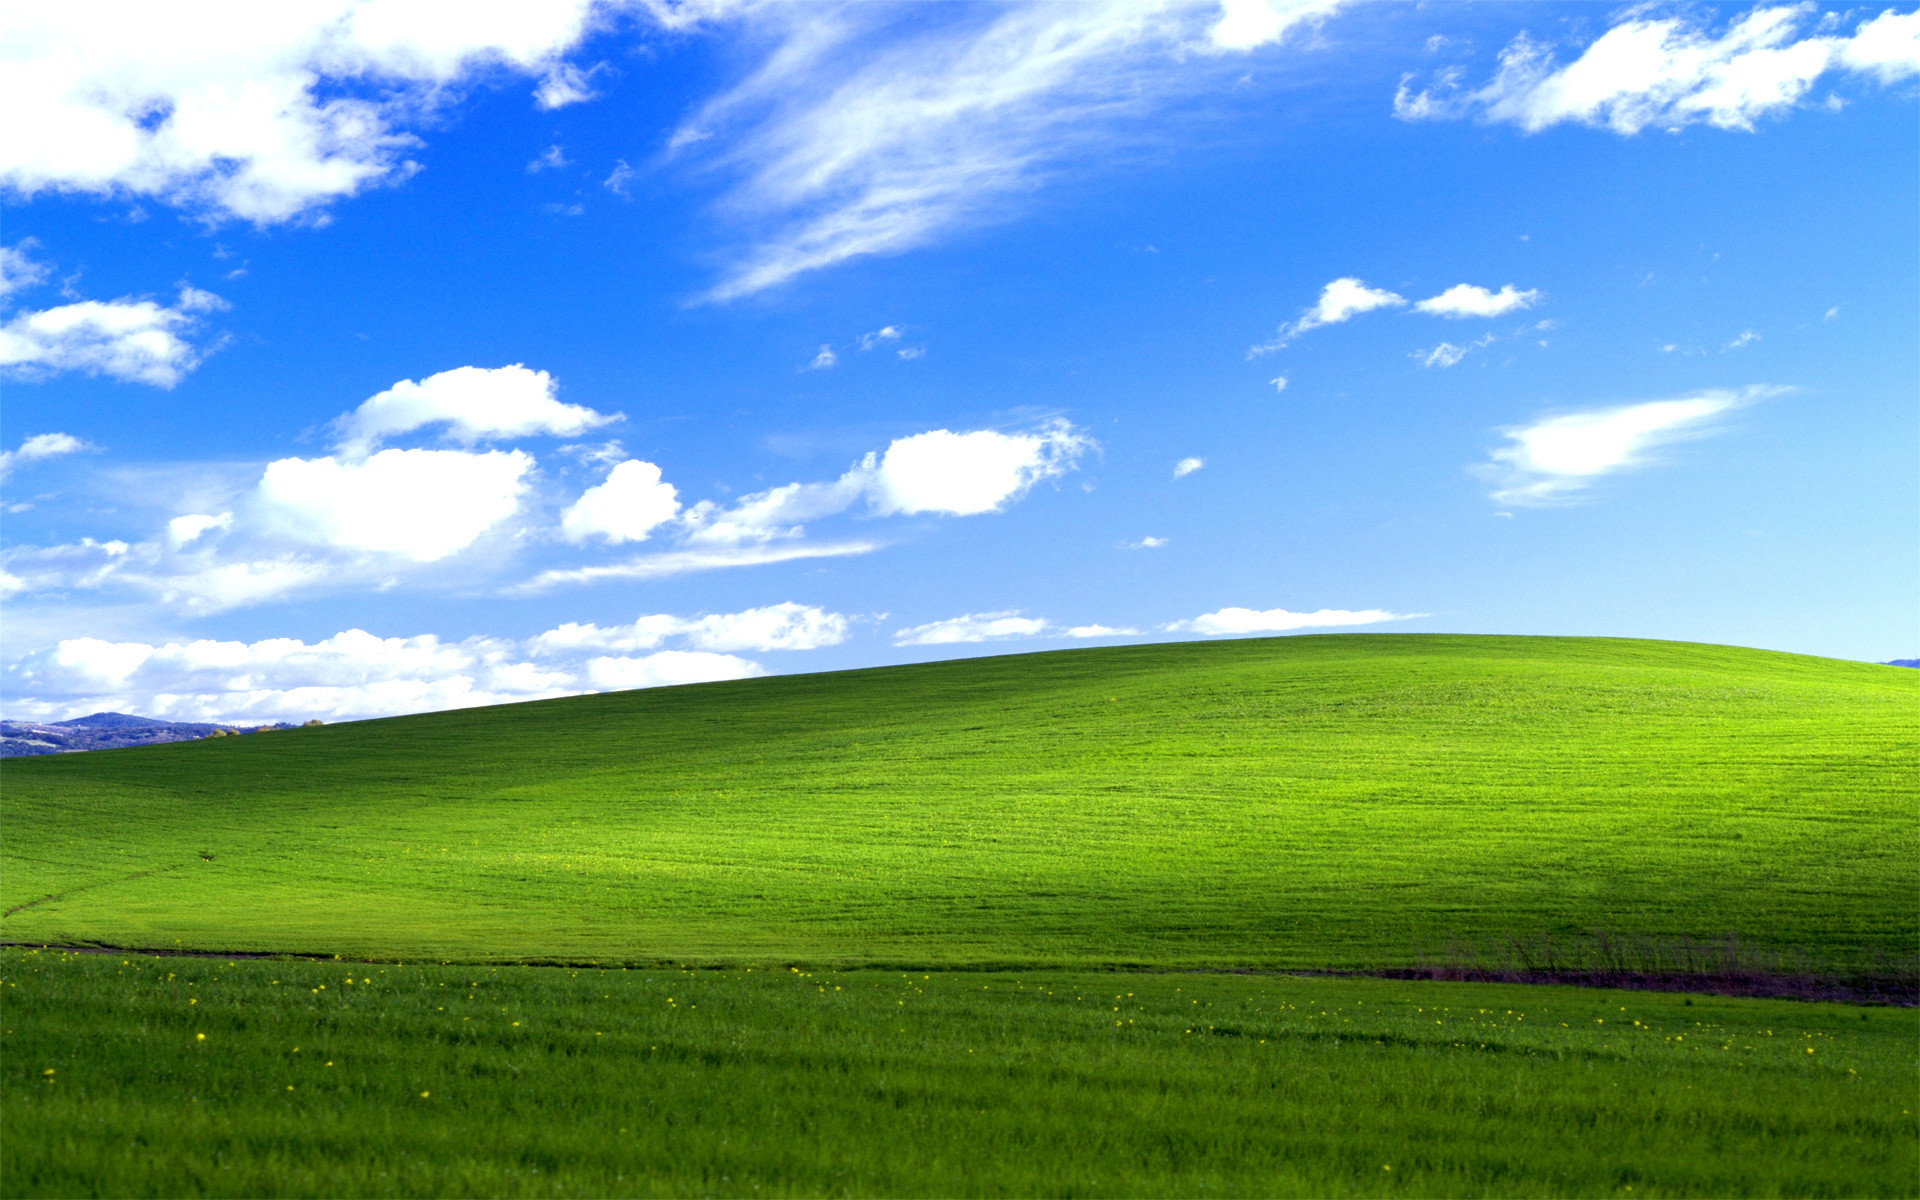 Windows Xp Desktop Backgrounds Images